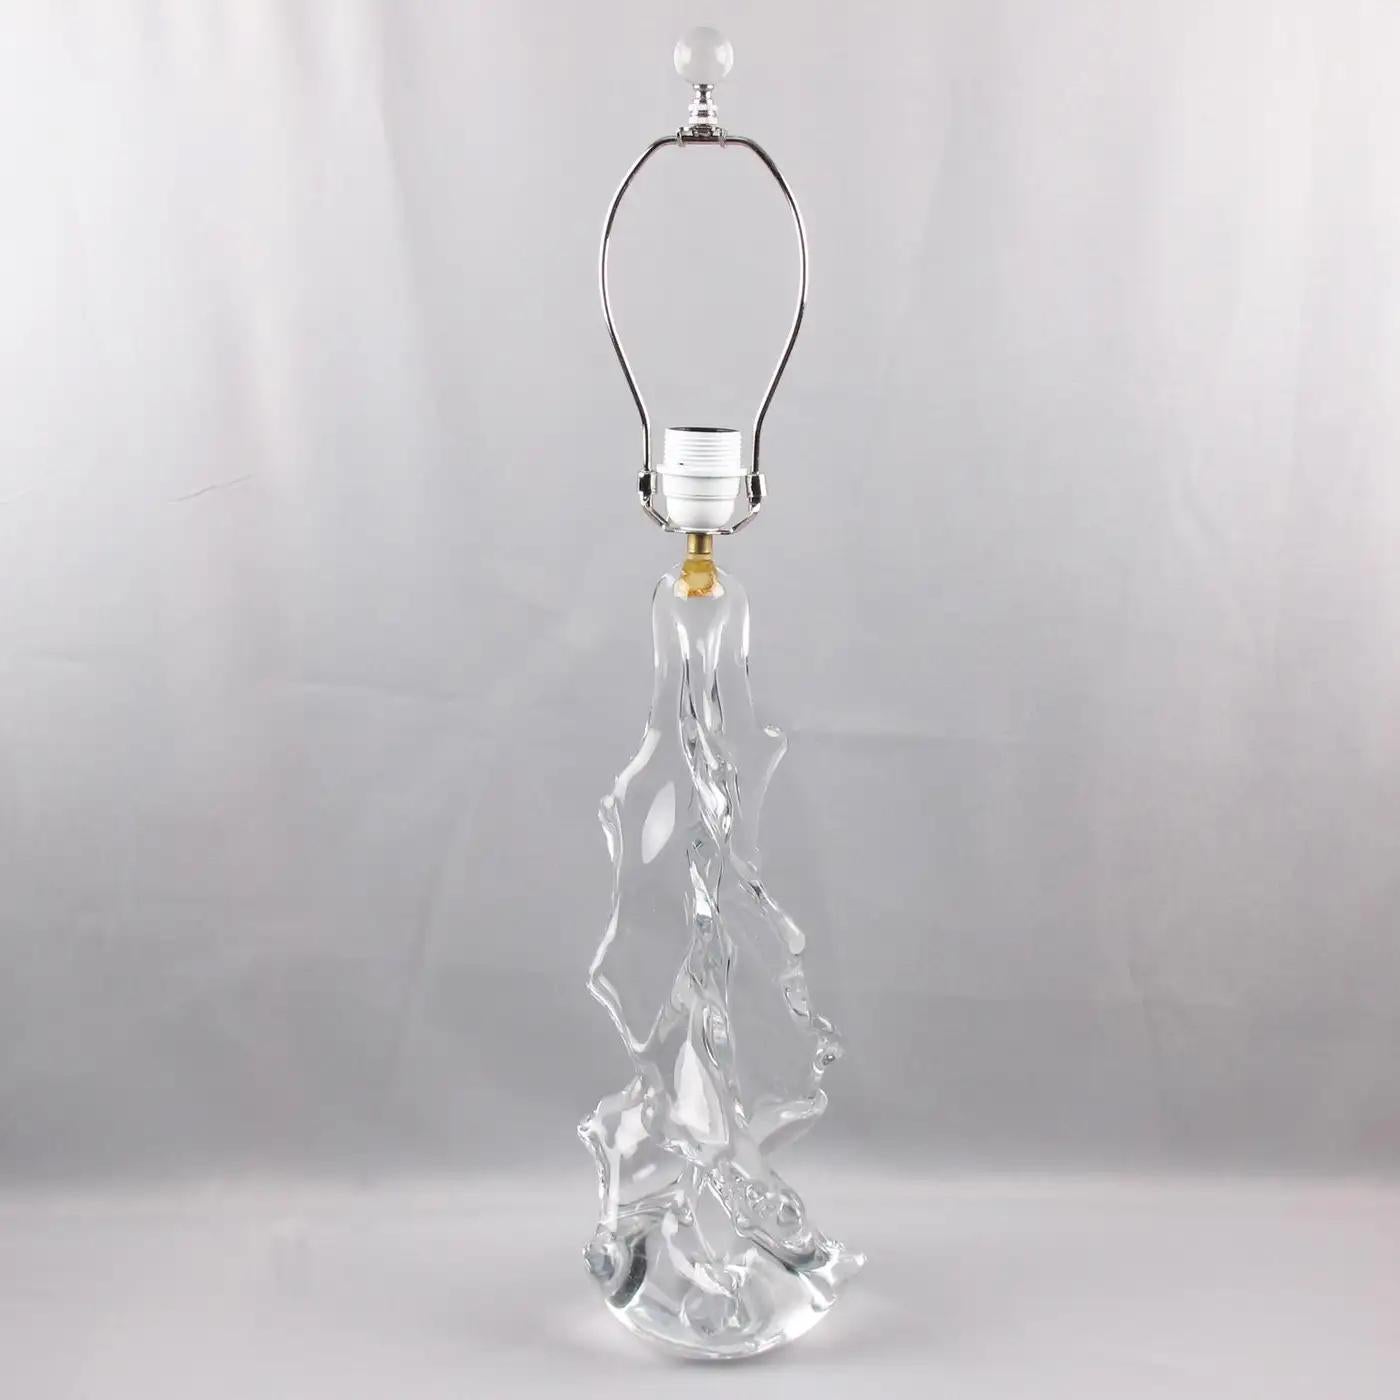 Charles Schneider France hat diese schöne Tisch- oder Schreibtischlampe aus Glas entworfen. Der klare, mundgeblasene Kristall hat ein abstraktes Design, das einen riesigen Weihnachtsbaum in einer geschwungenen, wirbelartigen Form darstellt. Die